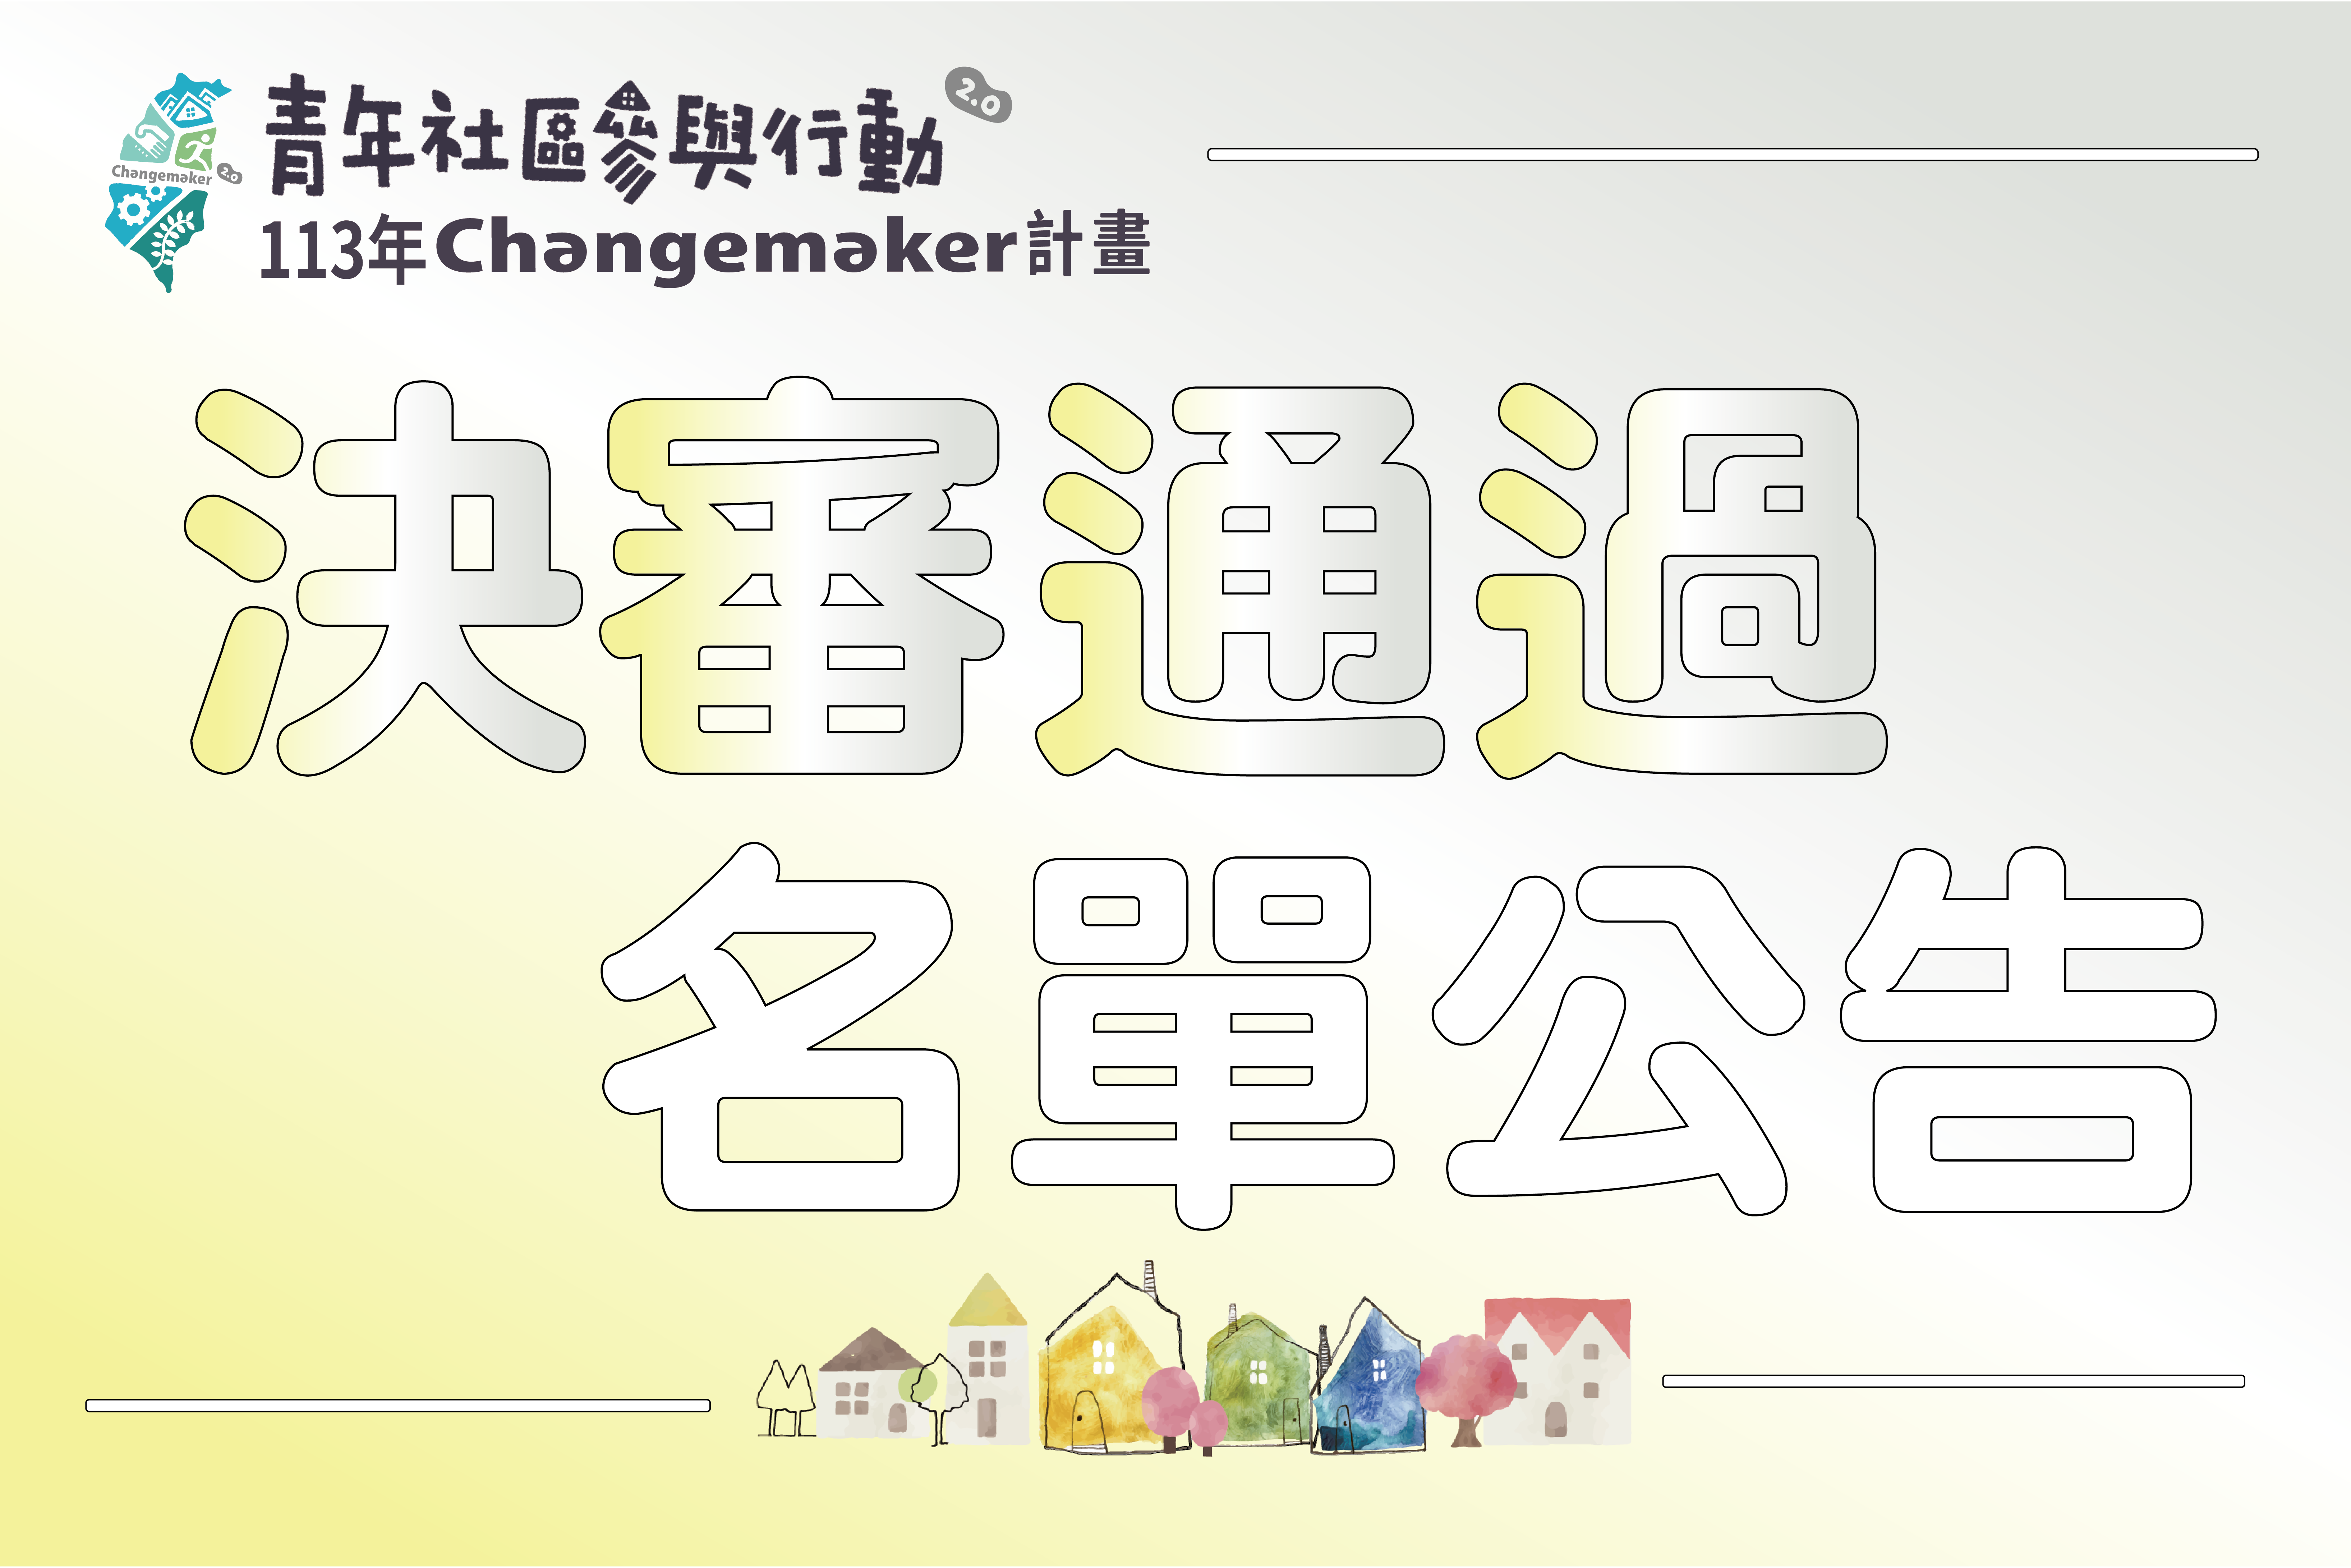 113年青年社區參與行動2.0 Changemaker計畫-決審通過名單圖示